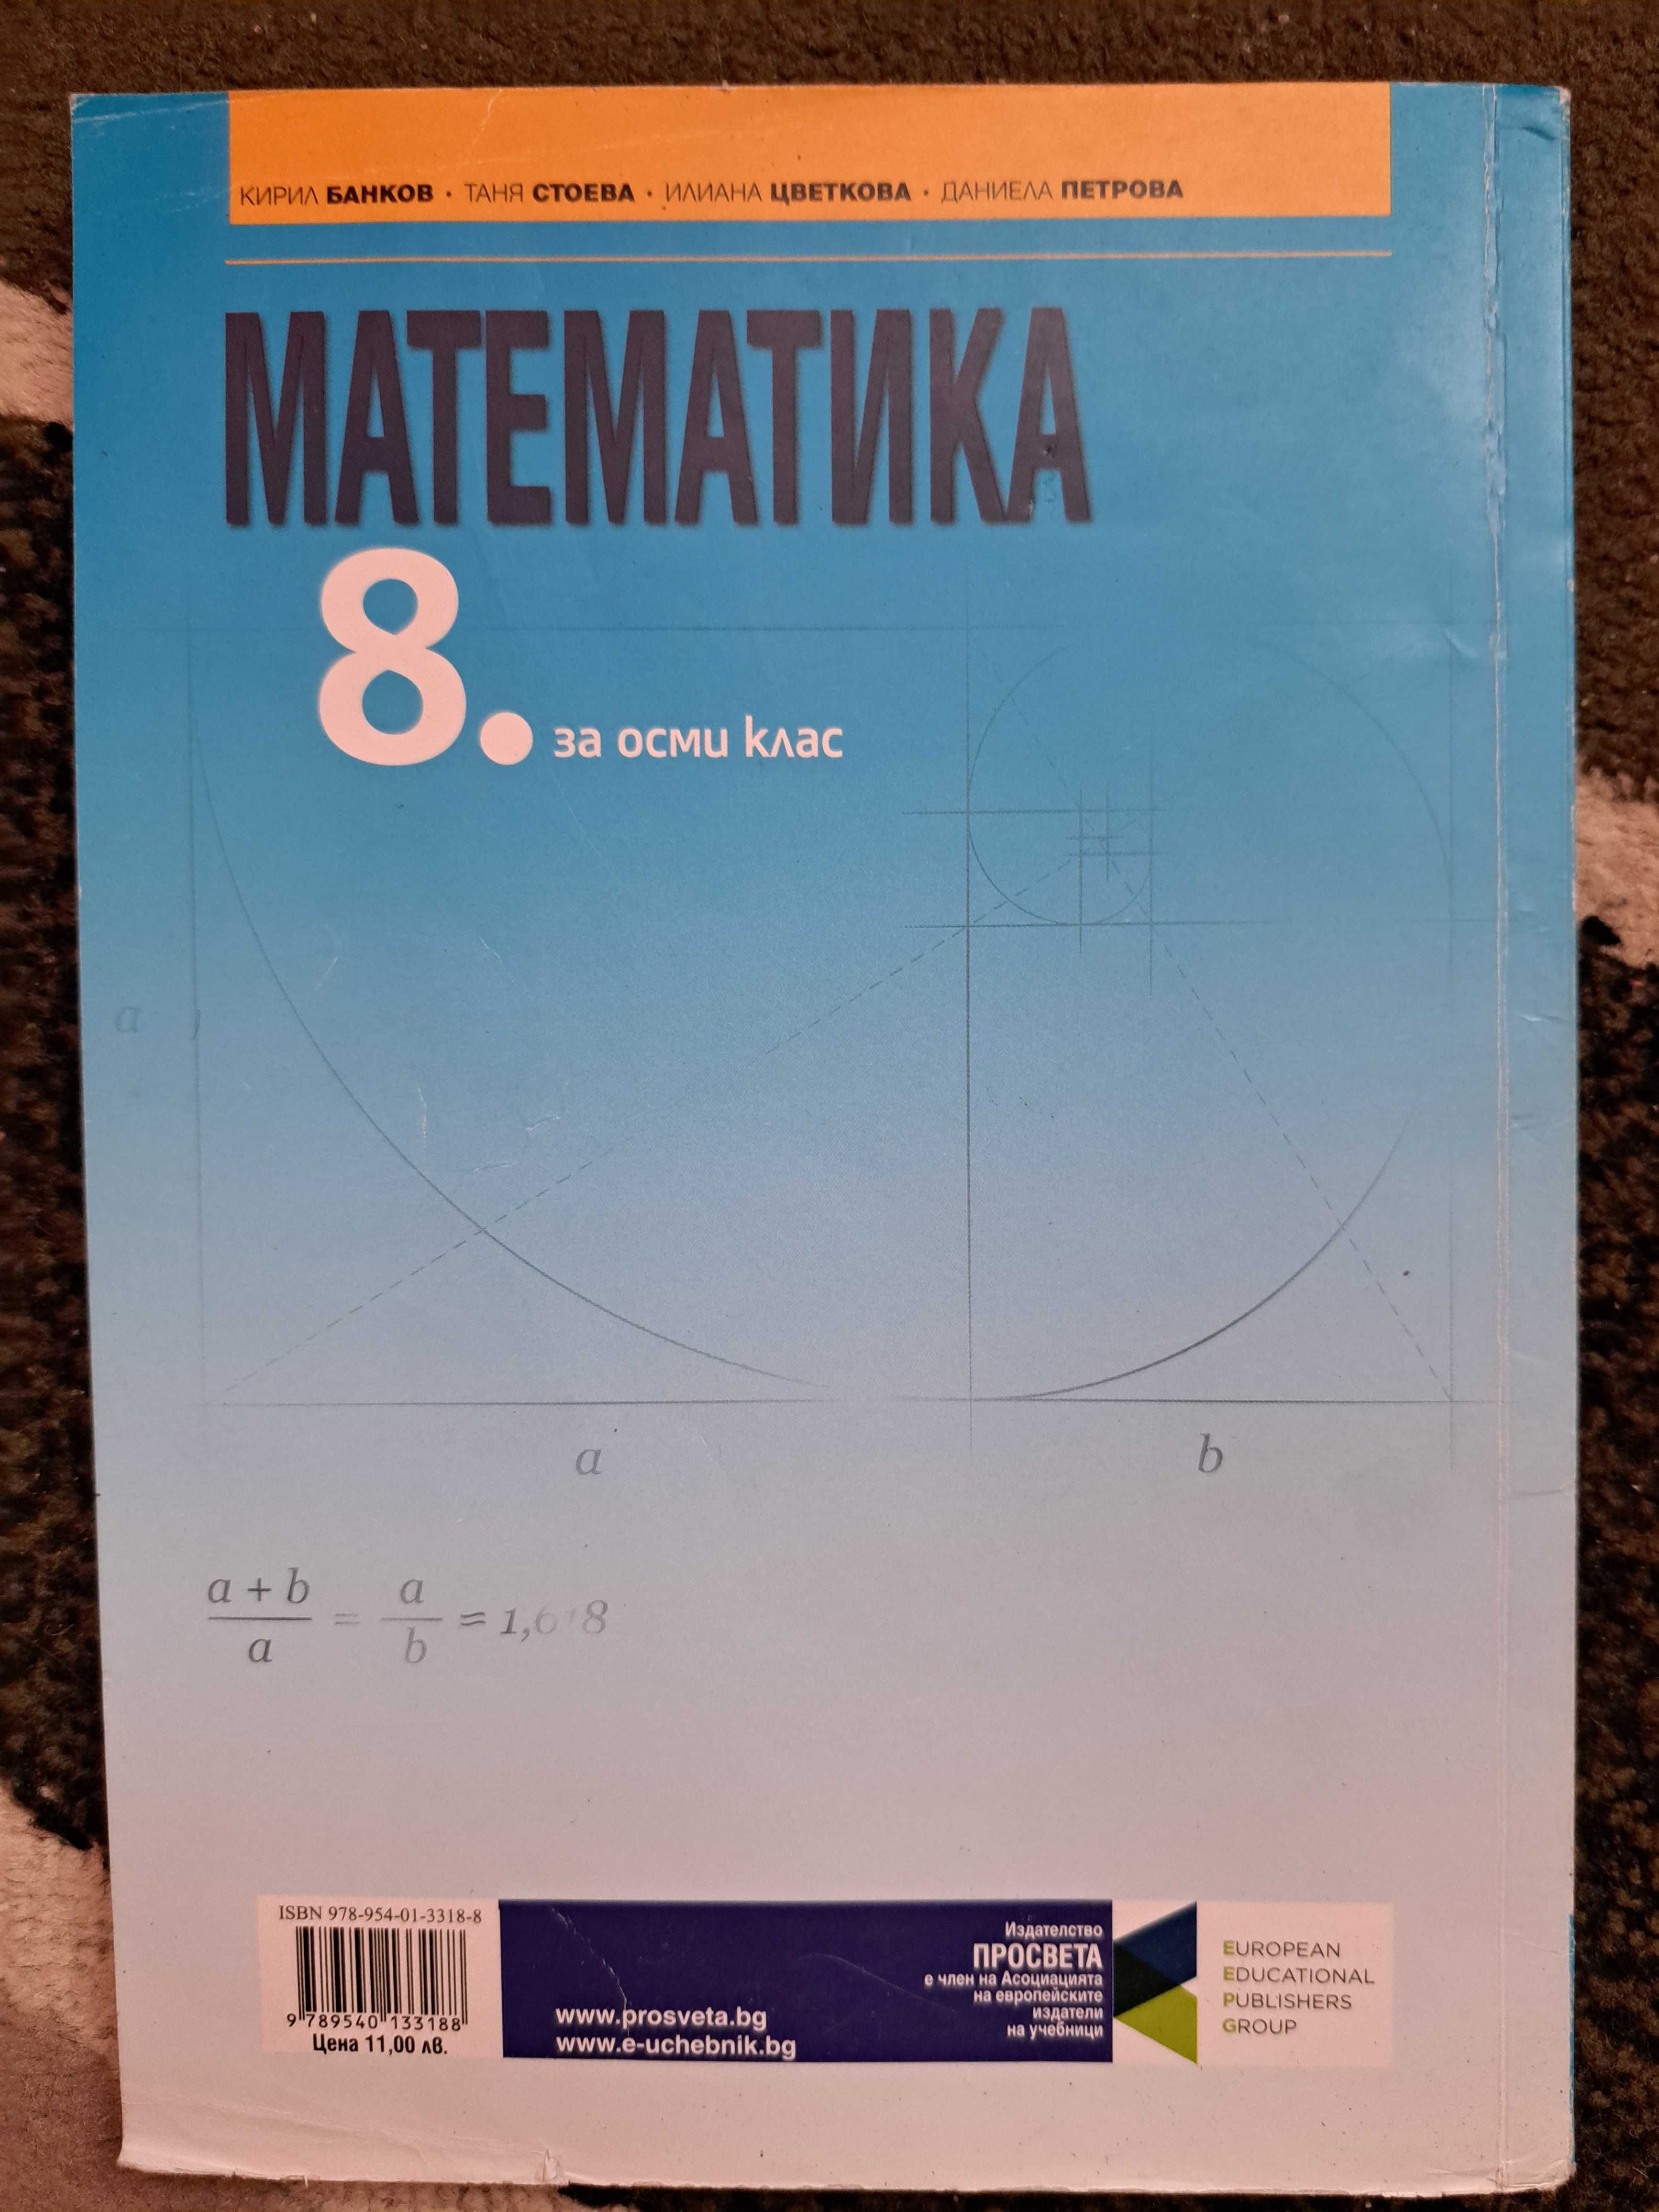 Учебник по Математика за 8 клас